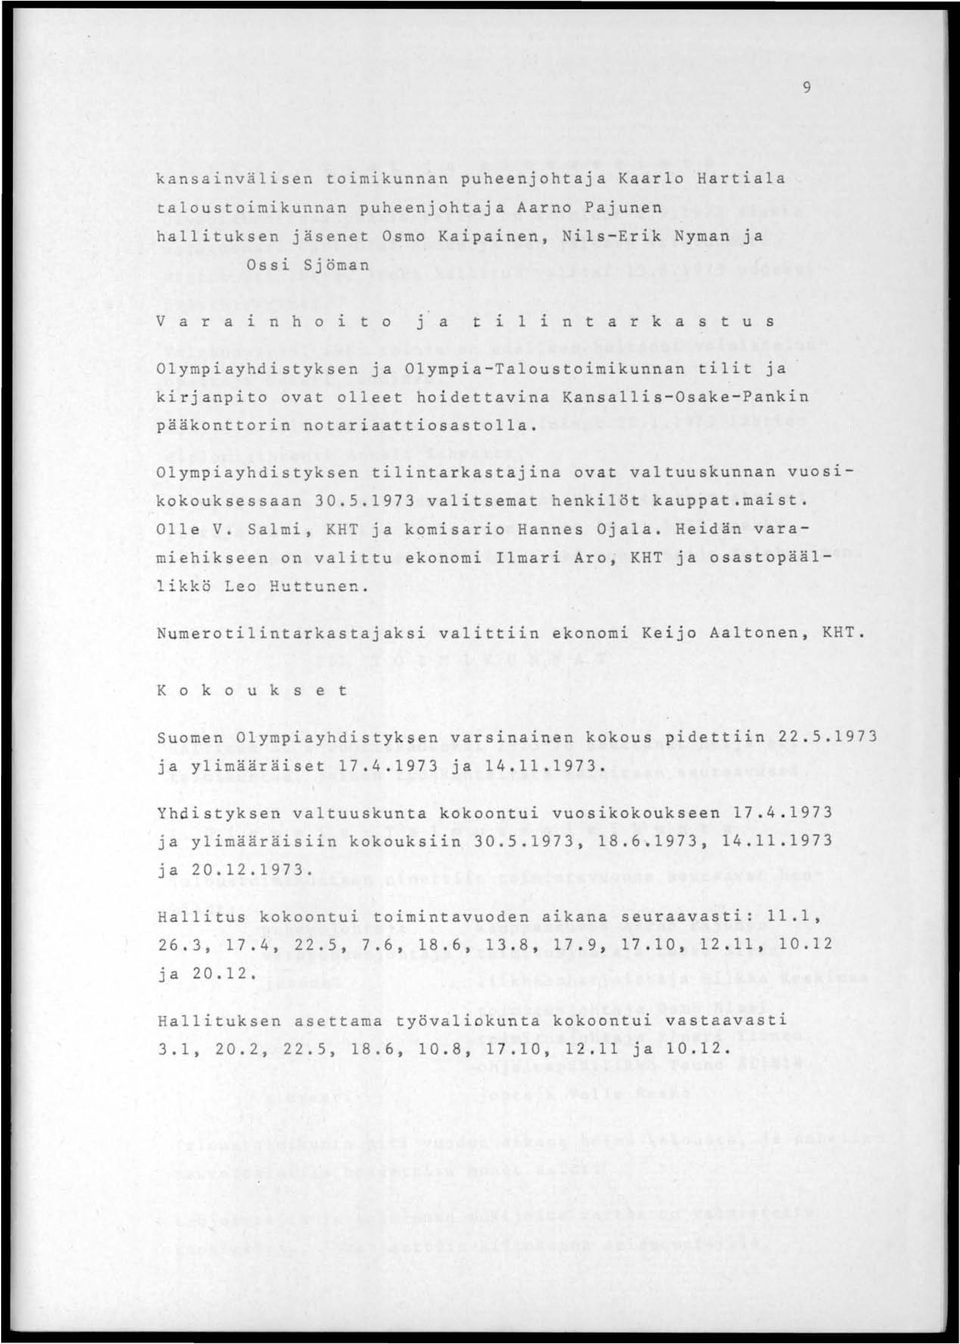 Olympiayhdistyksen tilintarkastajina ovat valtuuskunnan VUOS1- kokouksessaan 30.5.1973 valitsemat henkilöt kauppat.maist. Olle V. Salmi, KHT ja kqmisario Hannes Ojala.